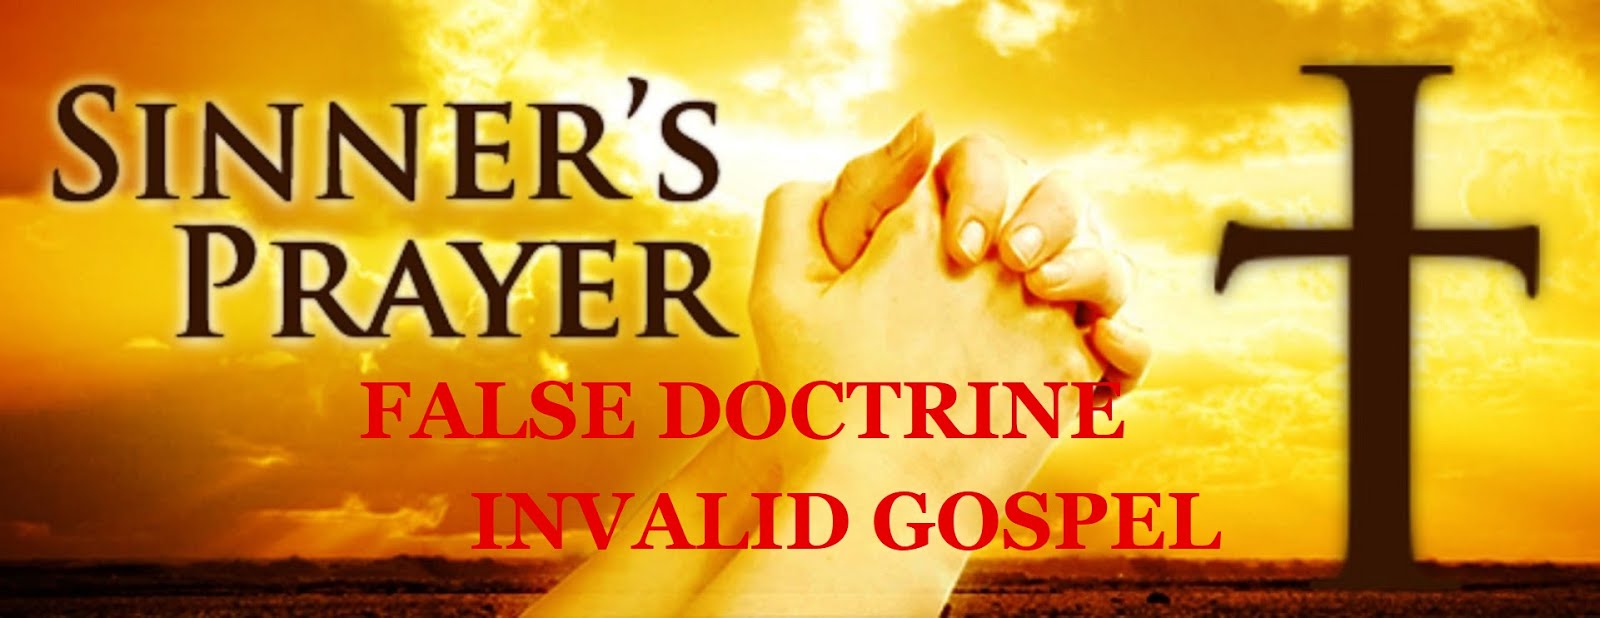 SINNER'S PRAYER - FALSE DOCTRINE - INVALID GOSPEL